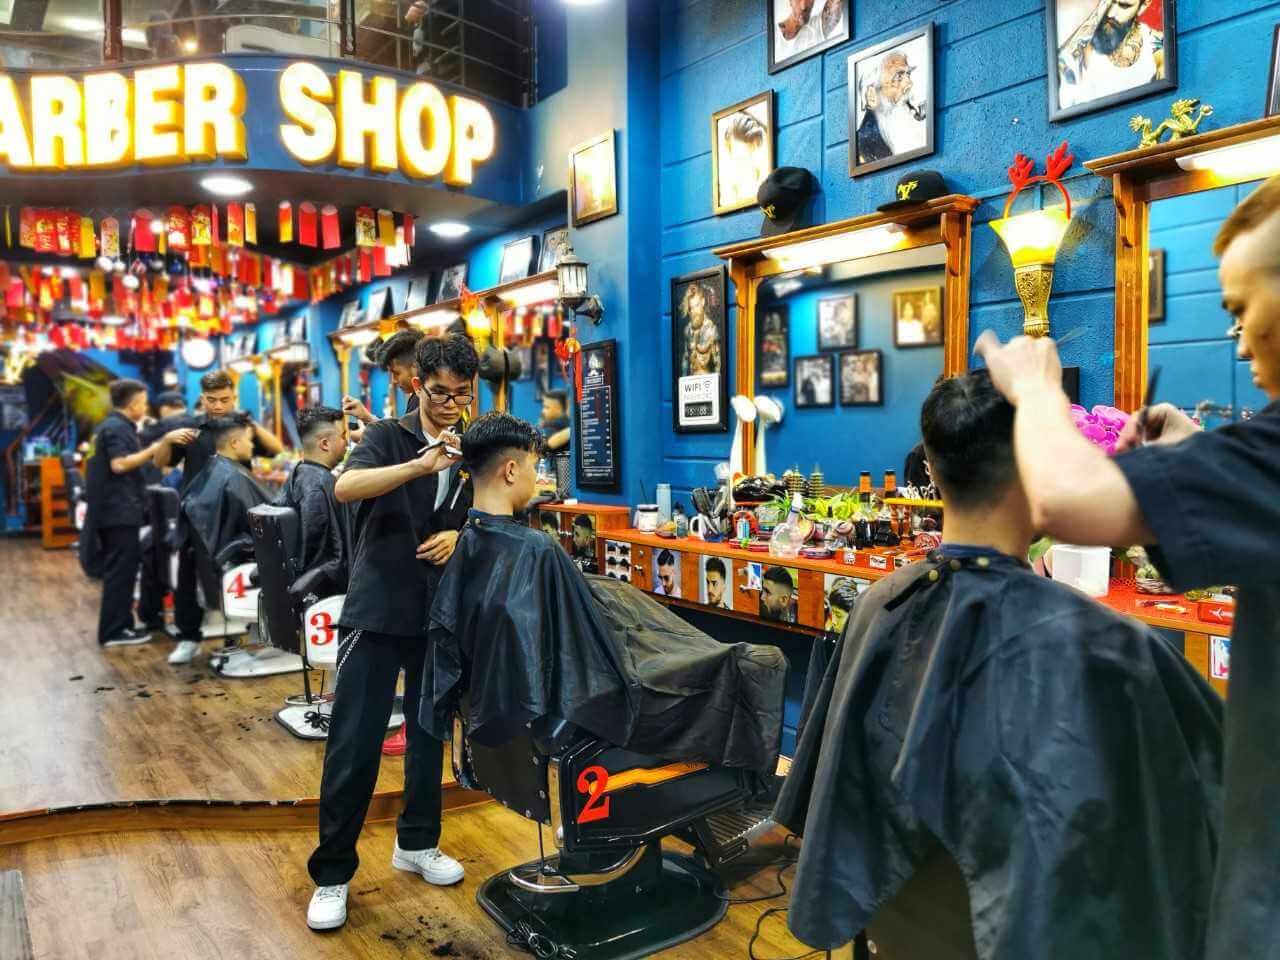 Cắt tóc cho khách giữa dịch, chủ tiệm bị xử phạt 7,5 triệu đồng | Báo Pháp  luật Việt Nam điện tử